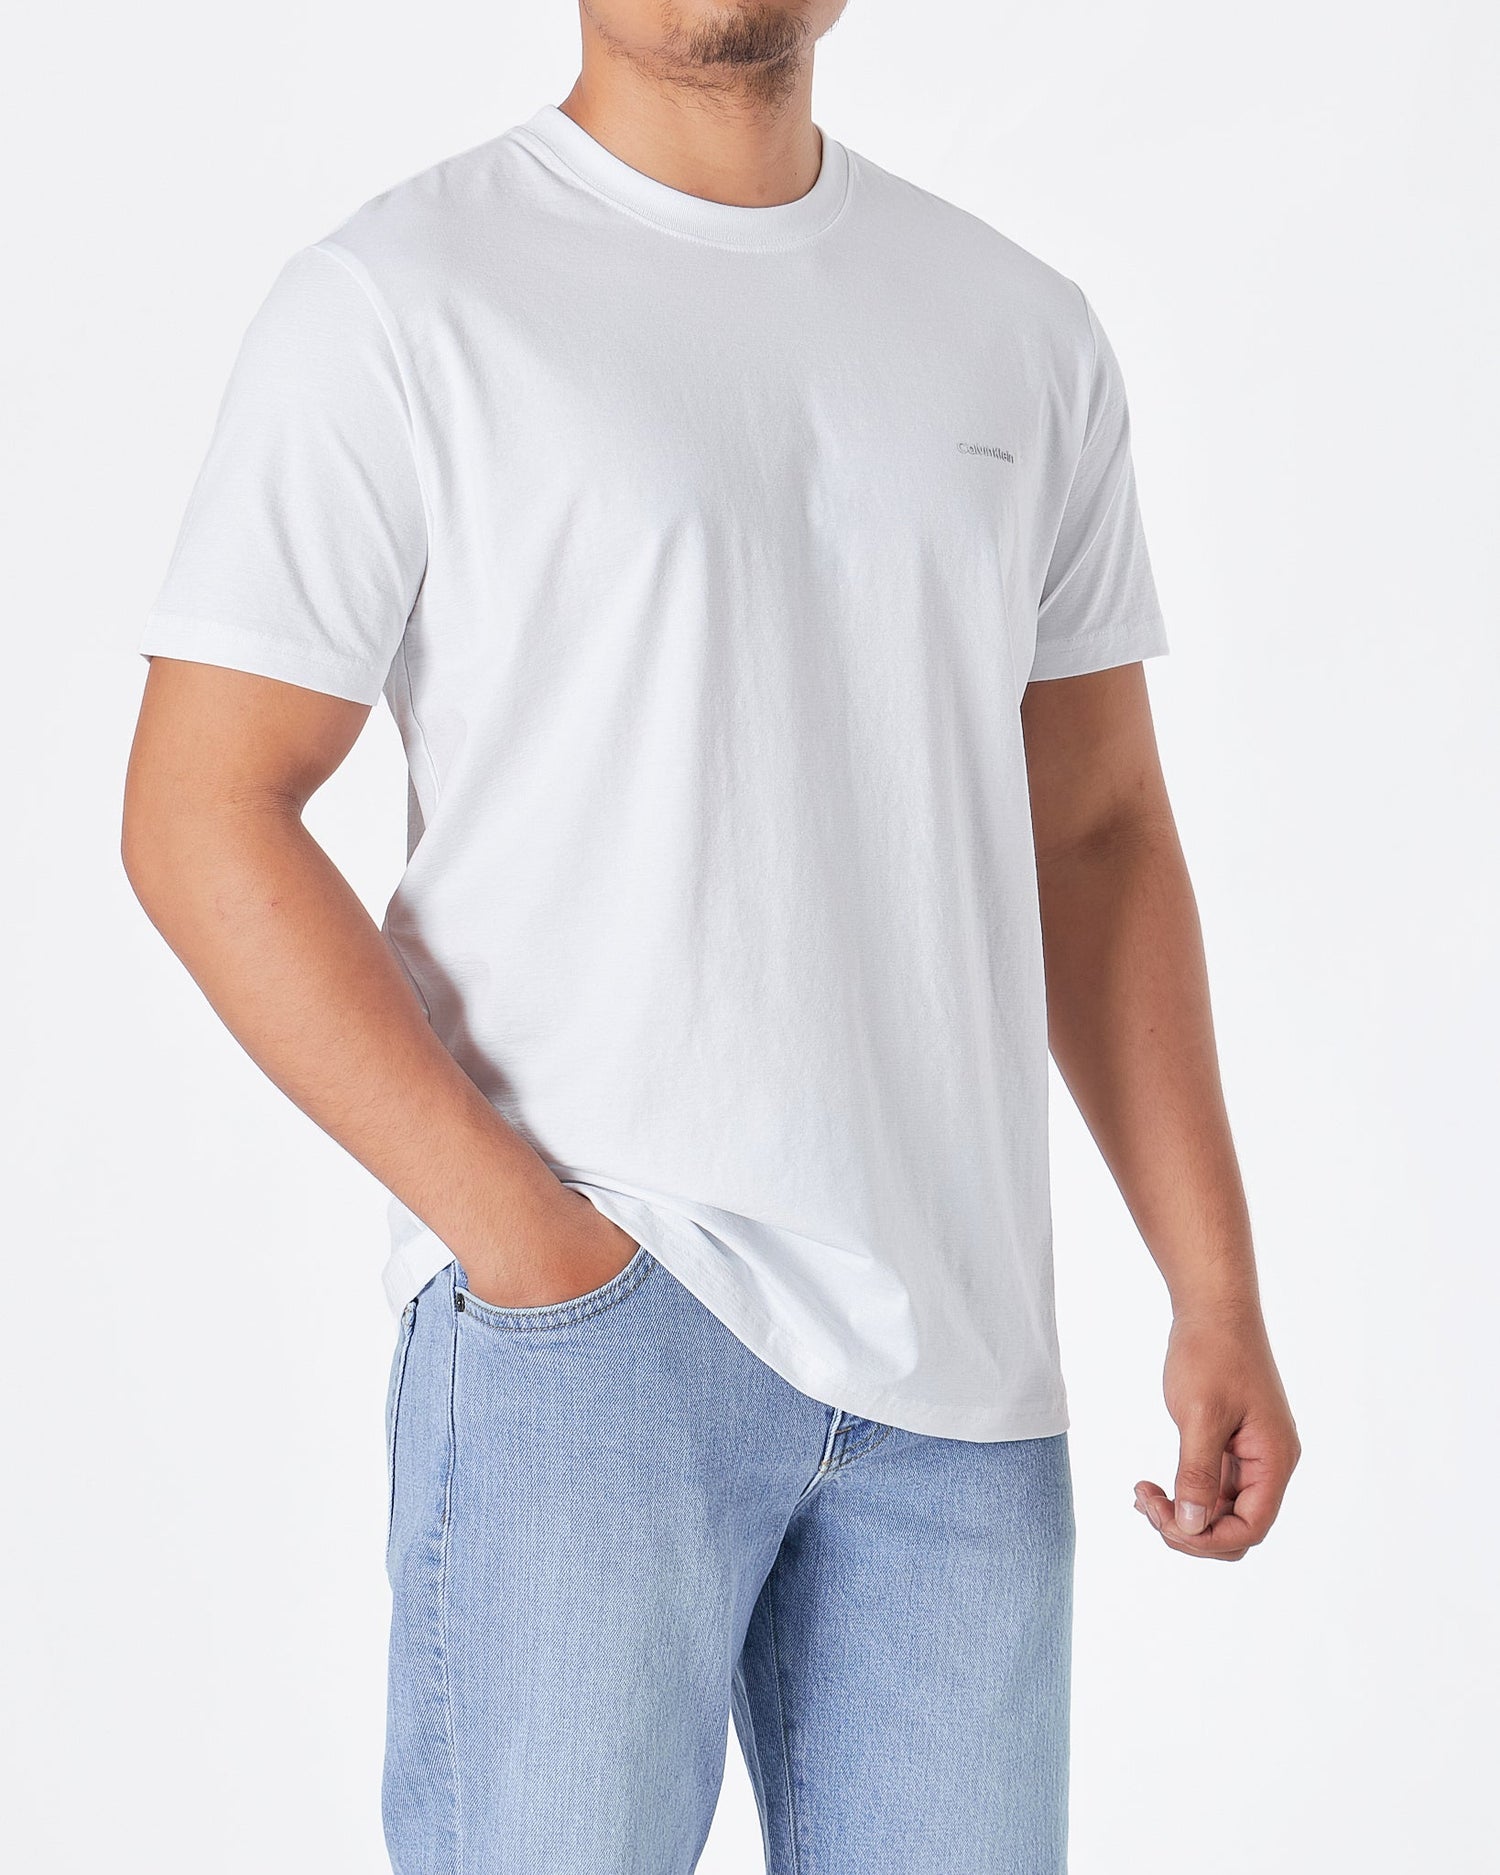 MOI OUTFIT-CK Plain Color Men White T-Shirt 15.90